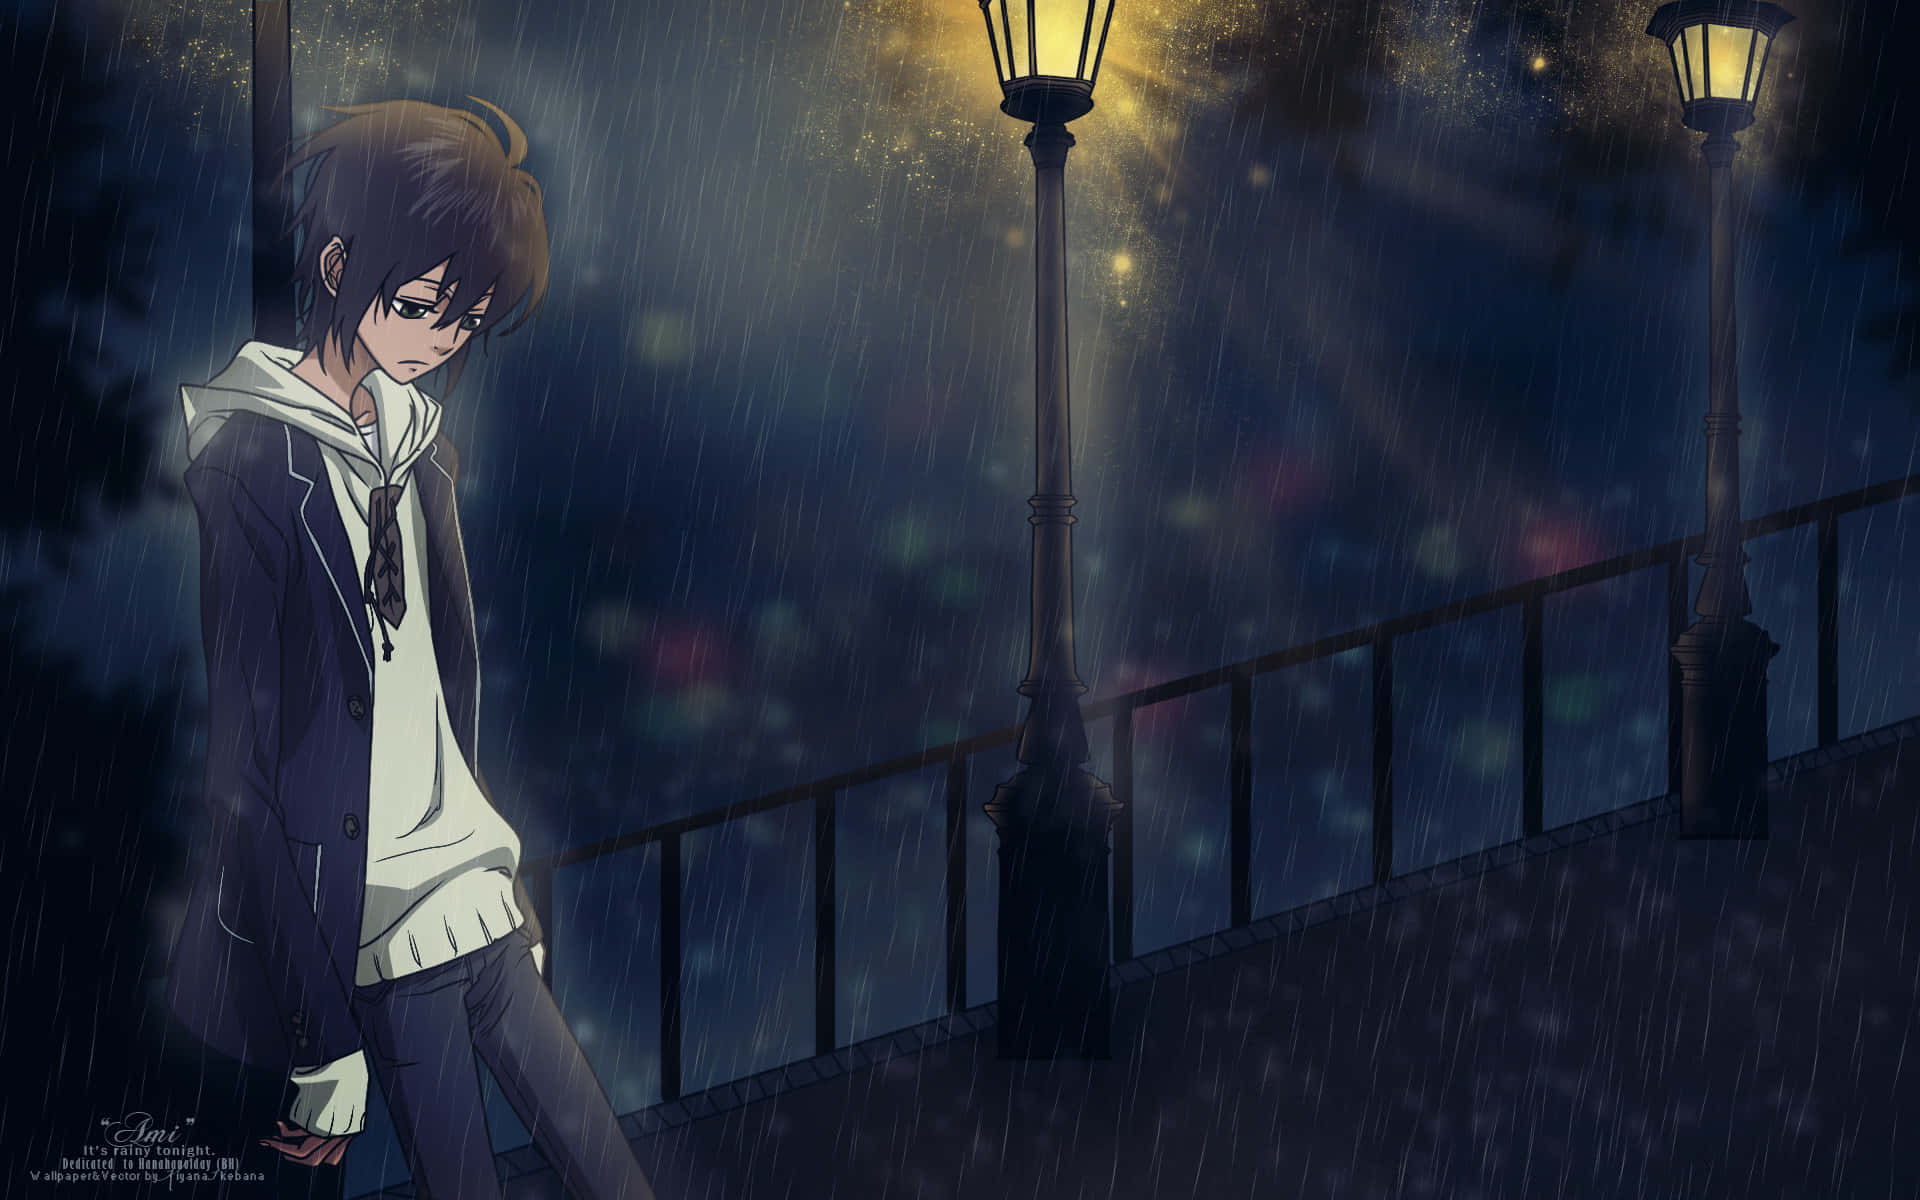 Einetiefe Traurigkeit Strahlt Von Diesem Traurigen Weinenden Anime Aus. Wallpaper